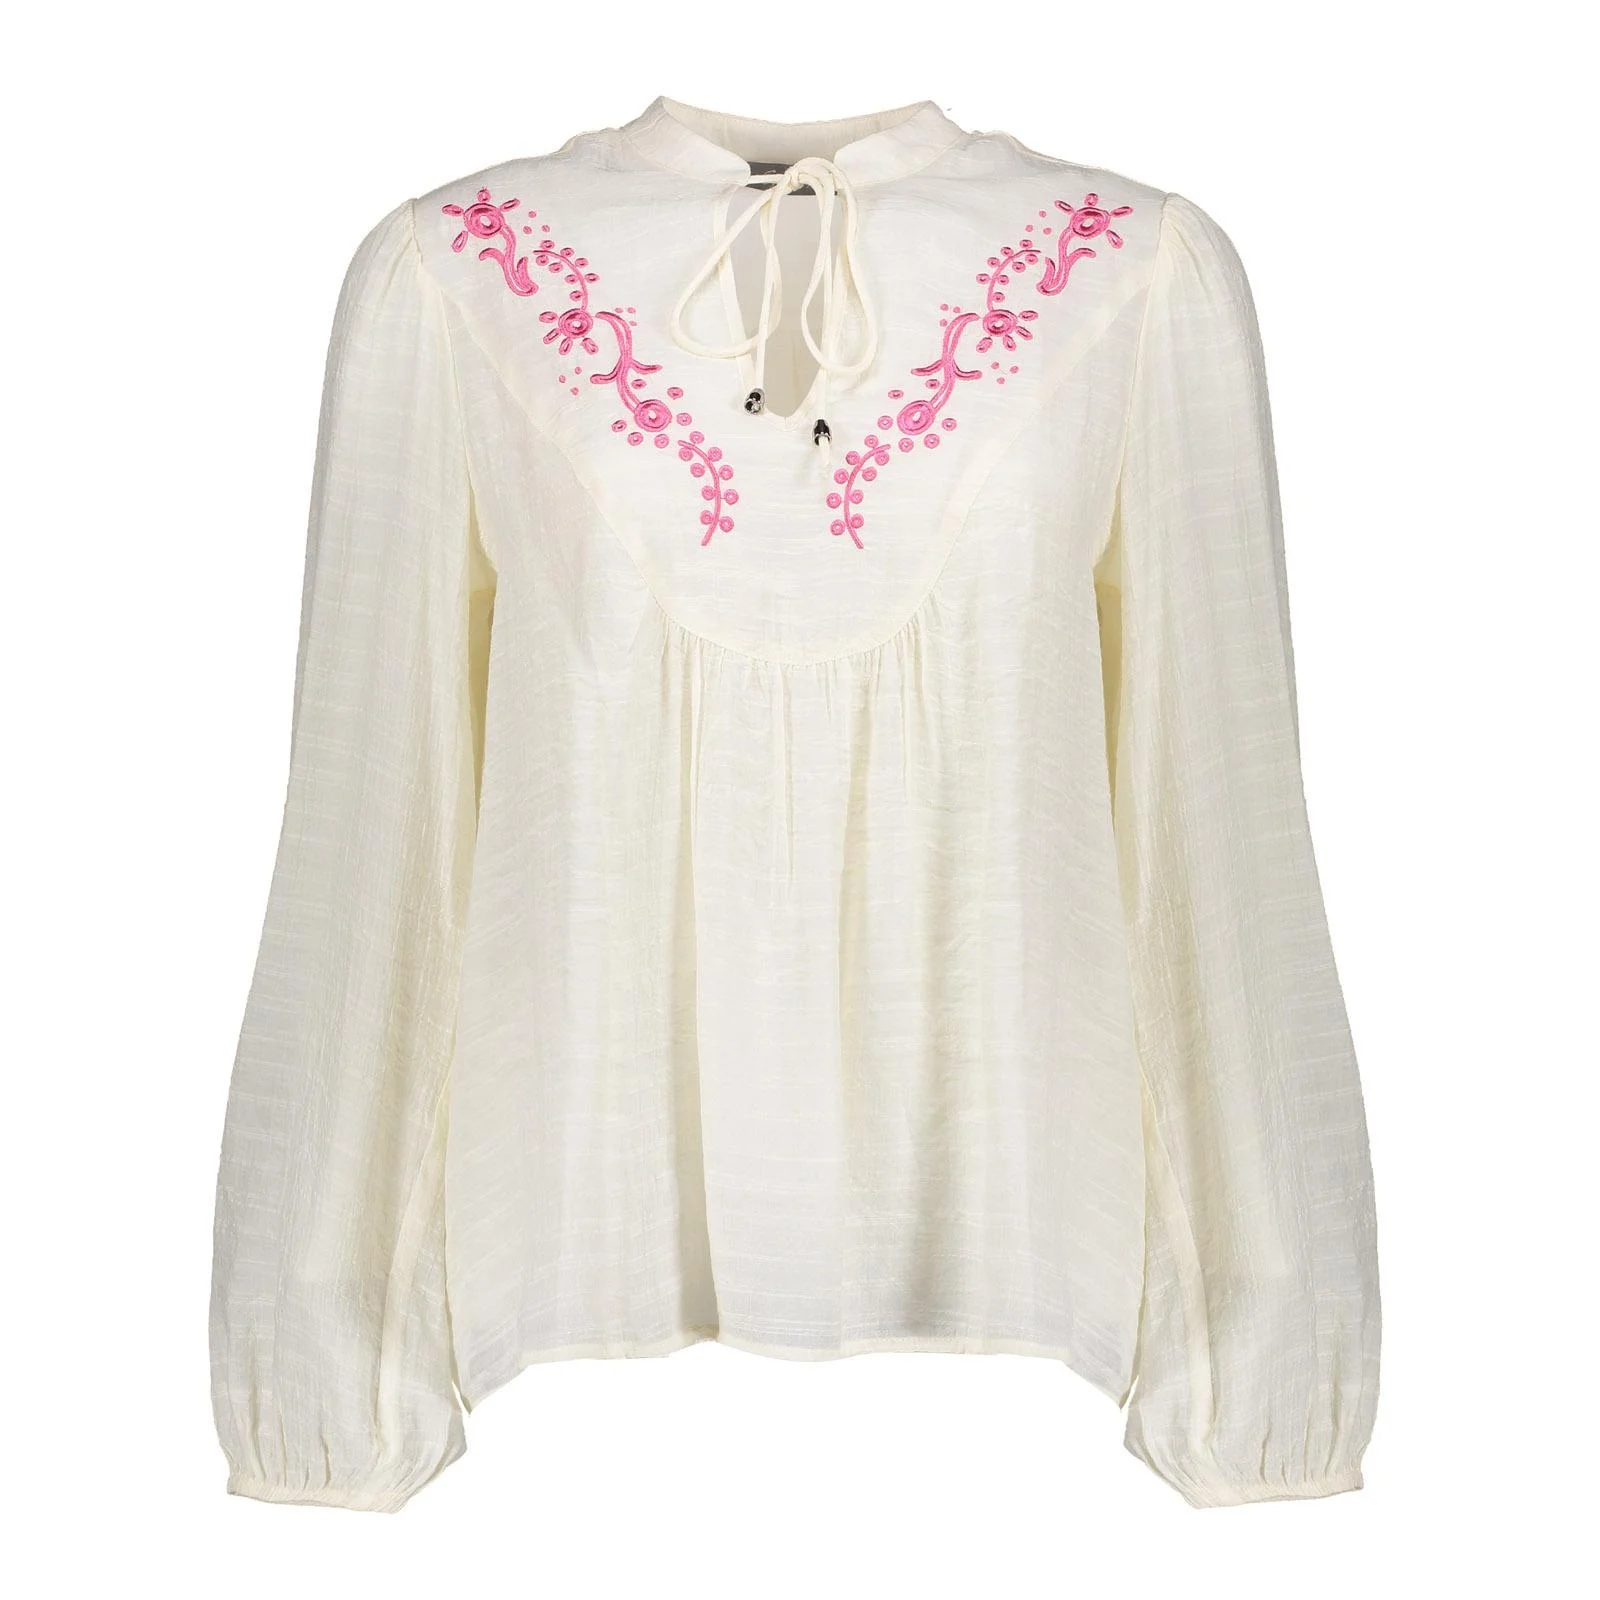 Geisha 43082-14 010 blouse embroidery off-white/fuchsia